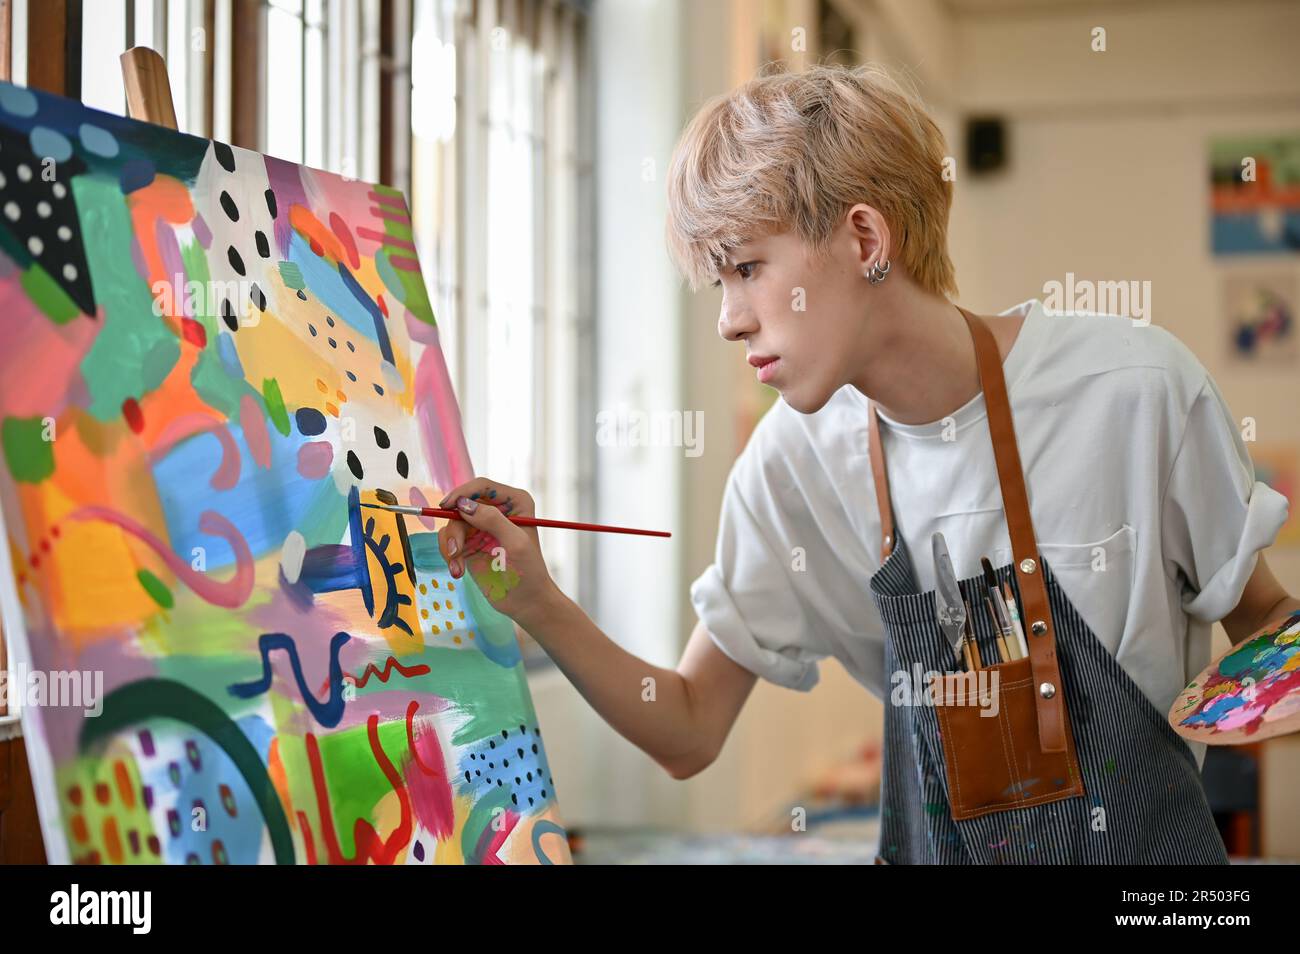 Ein professioneller und talentierter junger asiatischer, schwuler Künstler in einer Schürze konzentriert sich darauf, sein Bild auf einer Leinwand in seinem Studio zu malen. Stockfoto